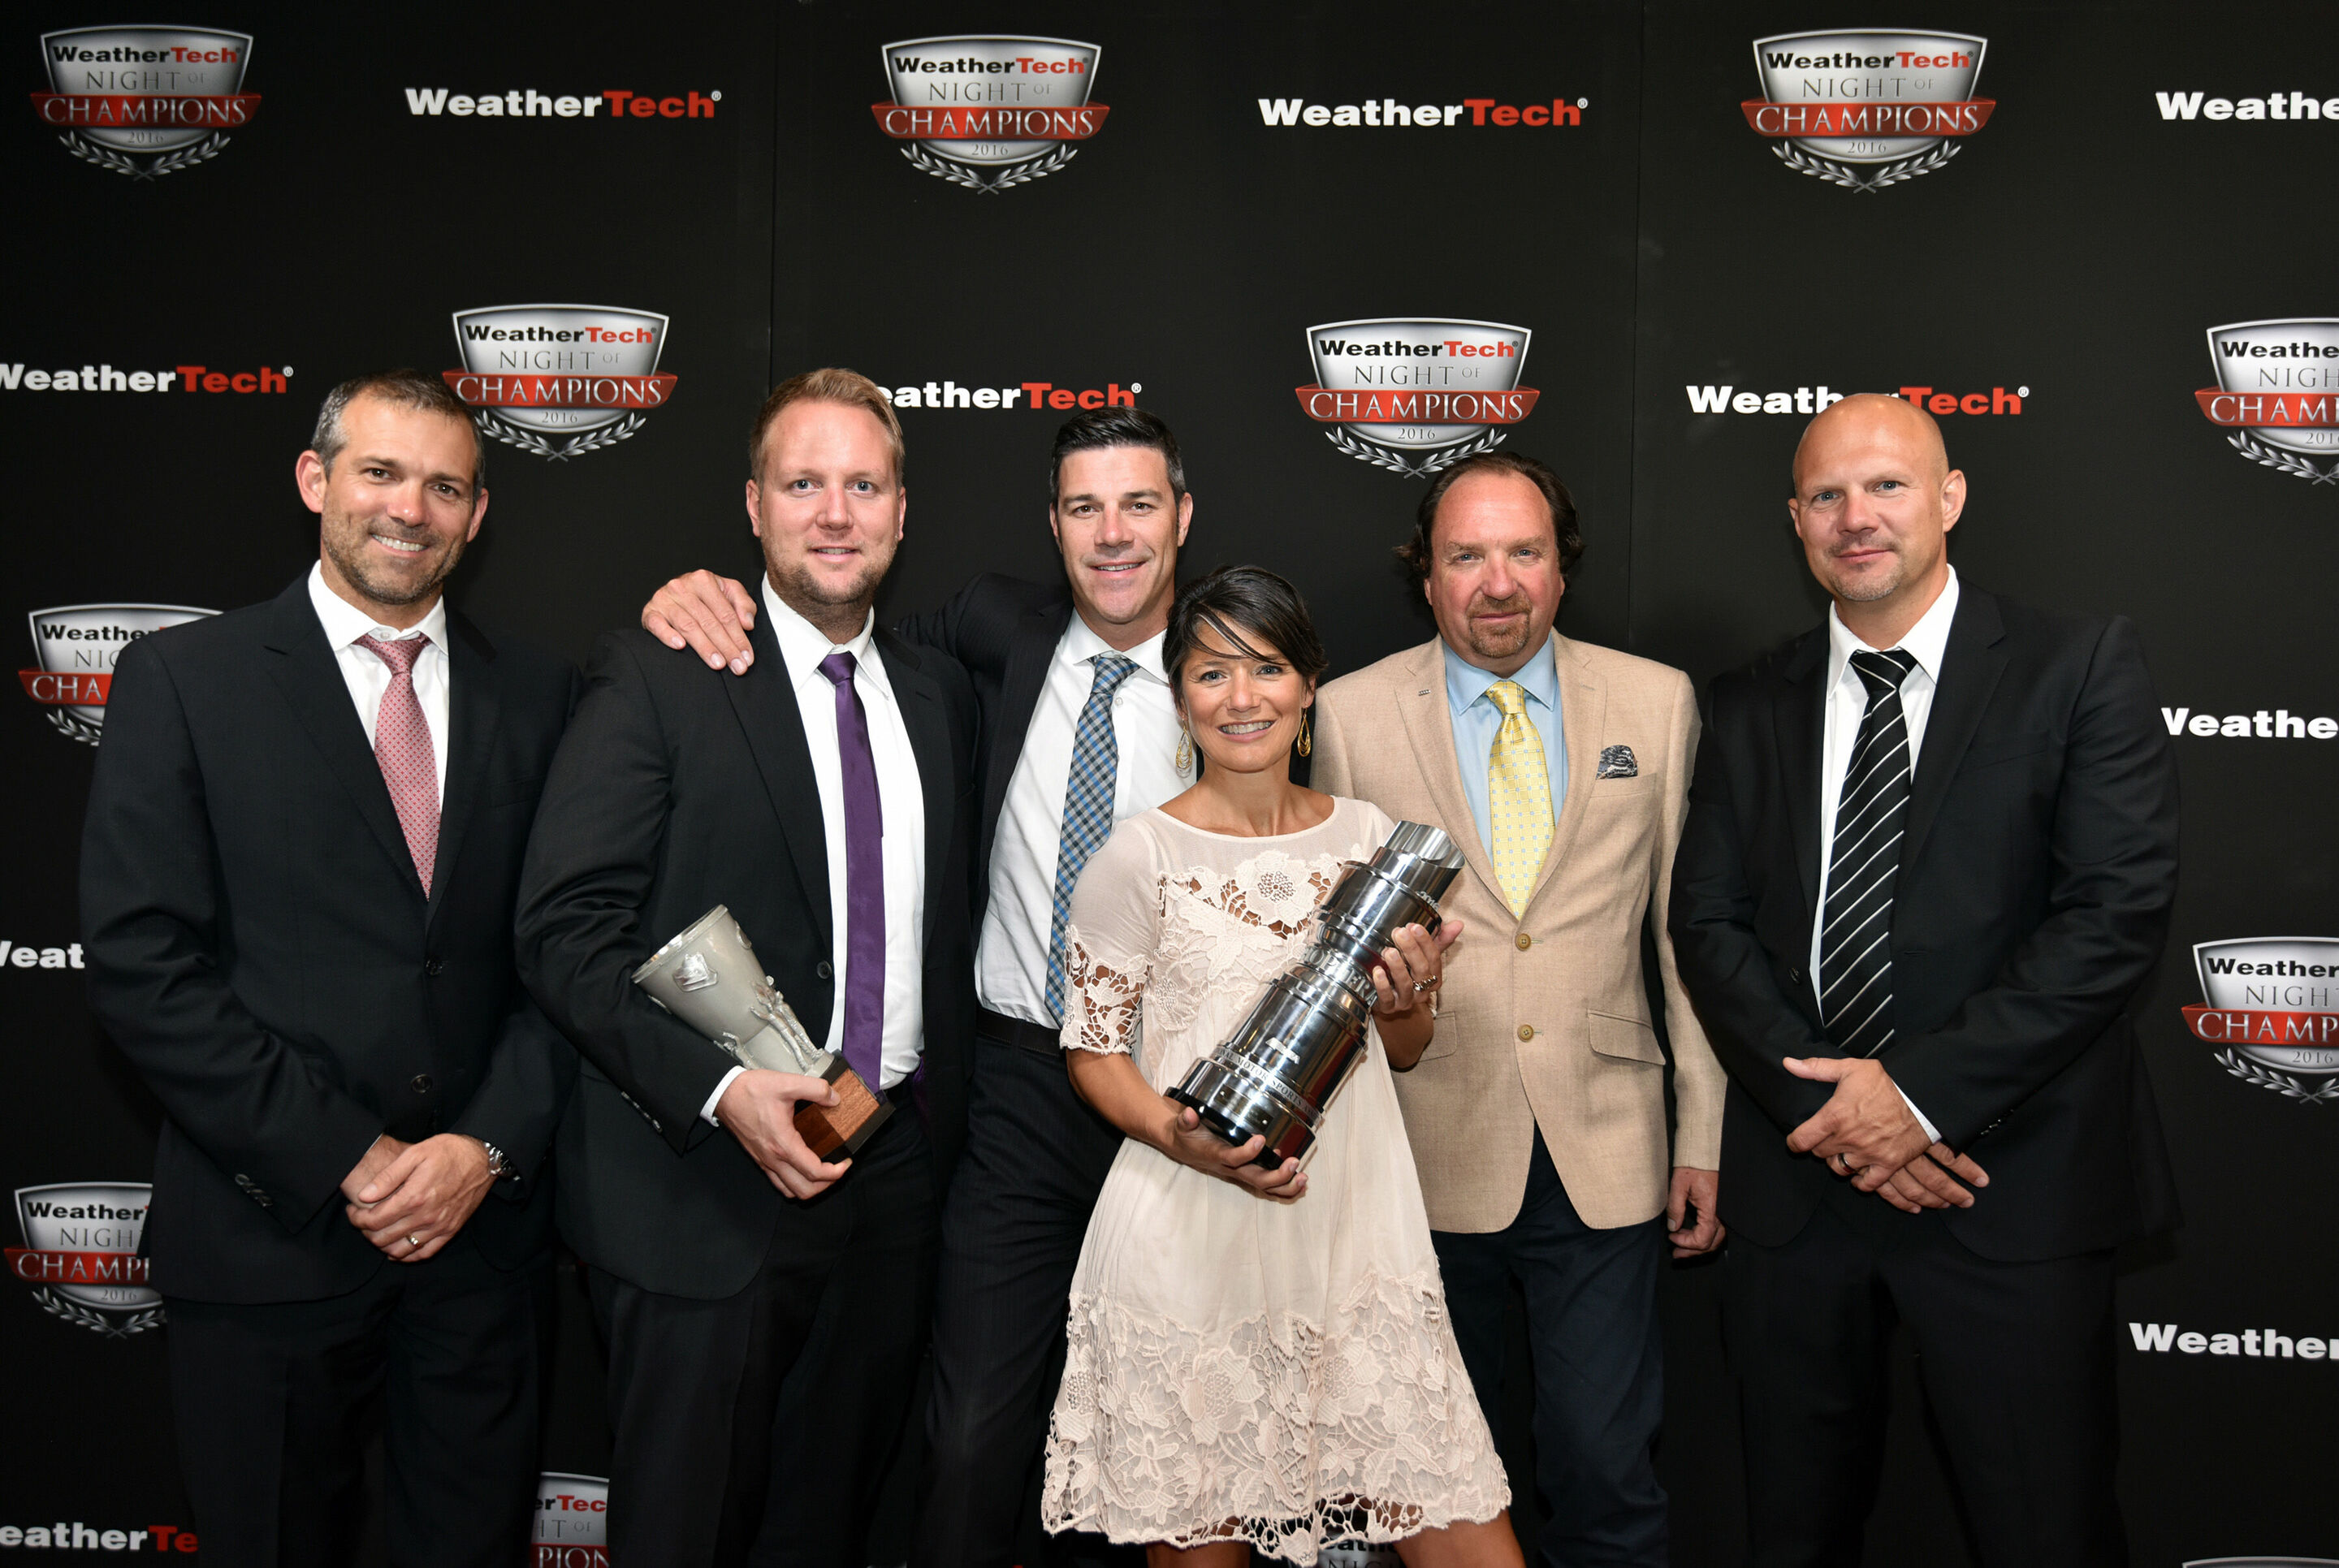 IMSA WeatherTech SportsCar Championship 2016